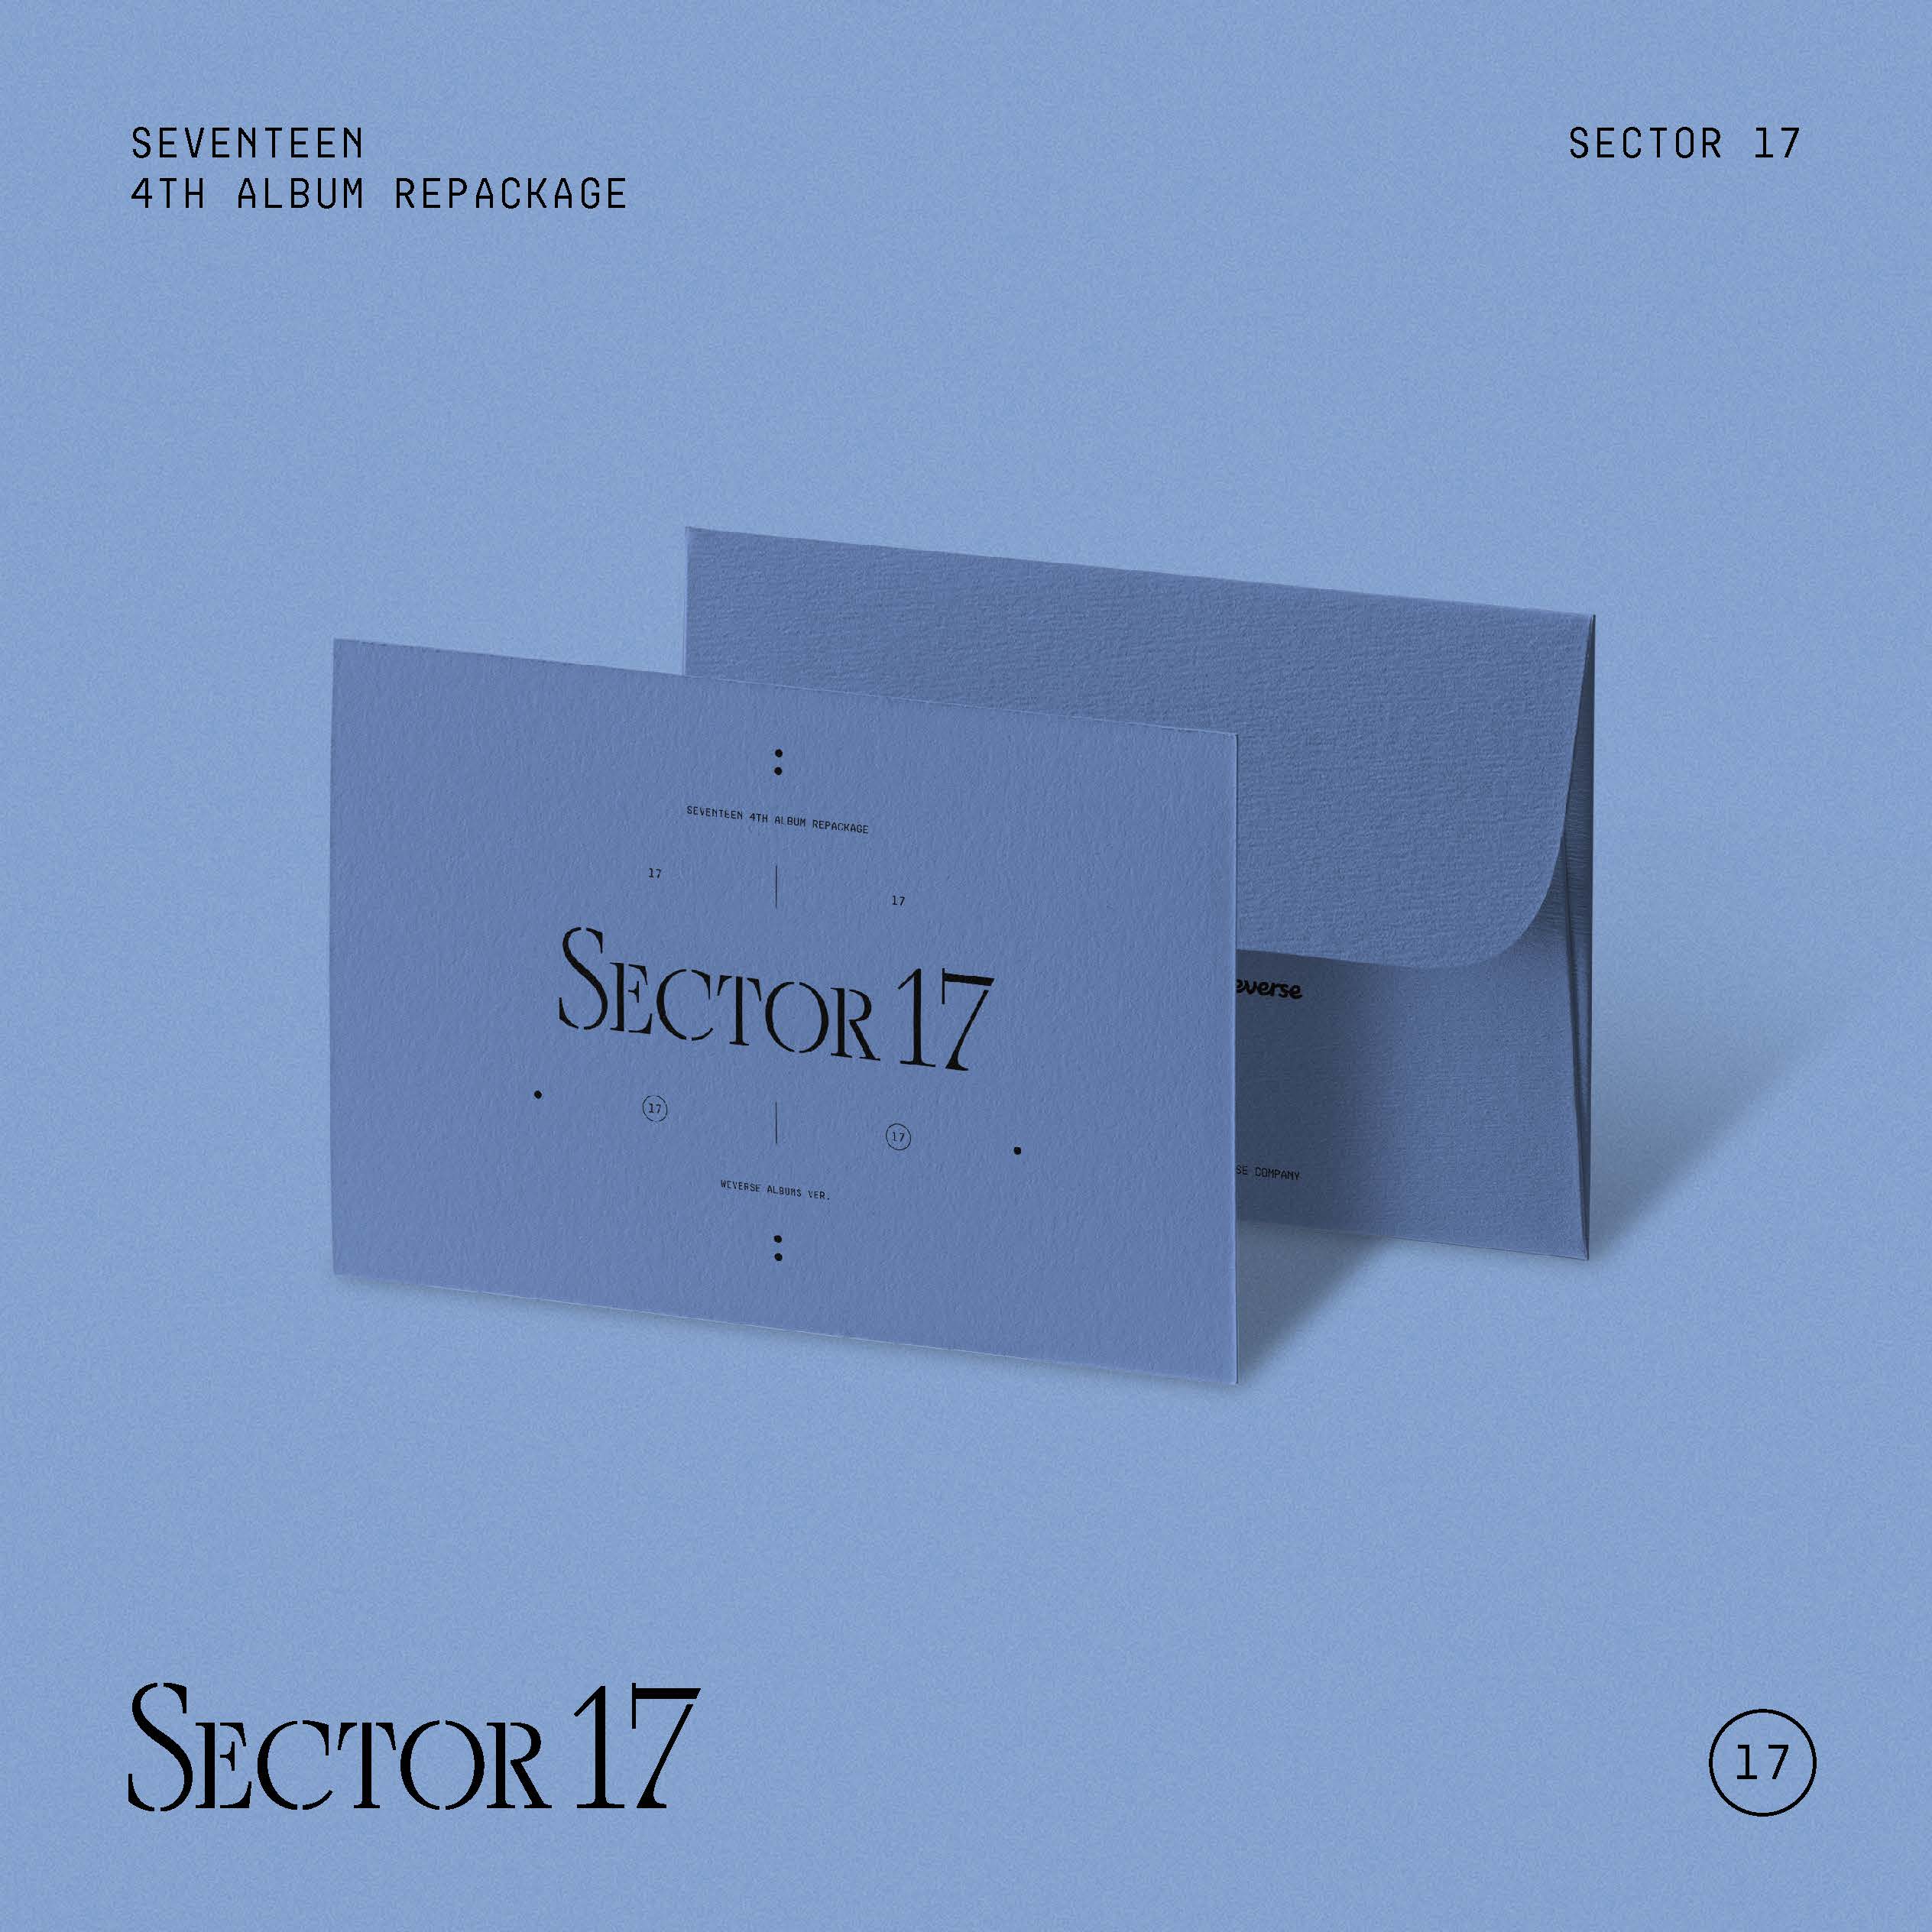 세븐틴 (SEVENTEEN) - 4th Album Repackage [SECTOR 17] (Weverse Albums ver.)케이팝스토어(kpop store)